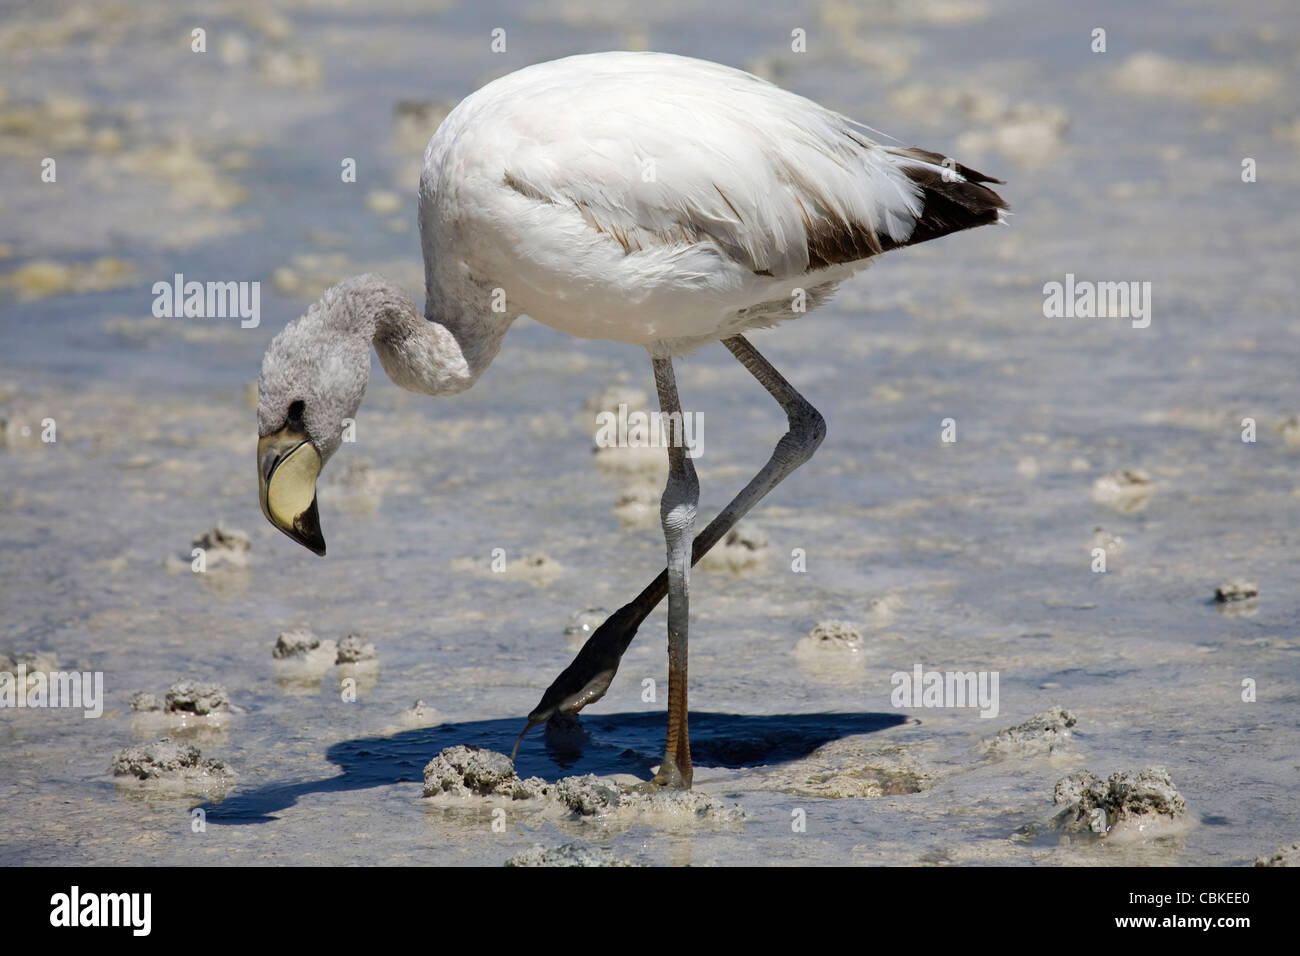 James's juvénile (Phoenicoparrus jamesi Flamingo) se nourrissent dans les eaux peu profondes au salt lake Laguna Hedionda, Altiplano, Bolivie Banque D'Images